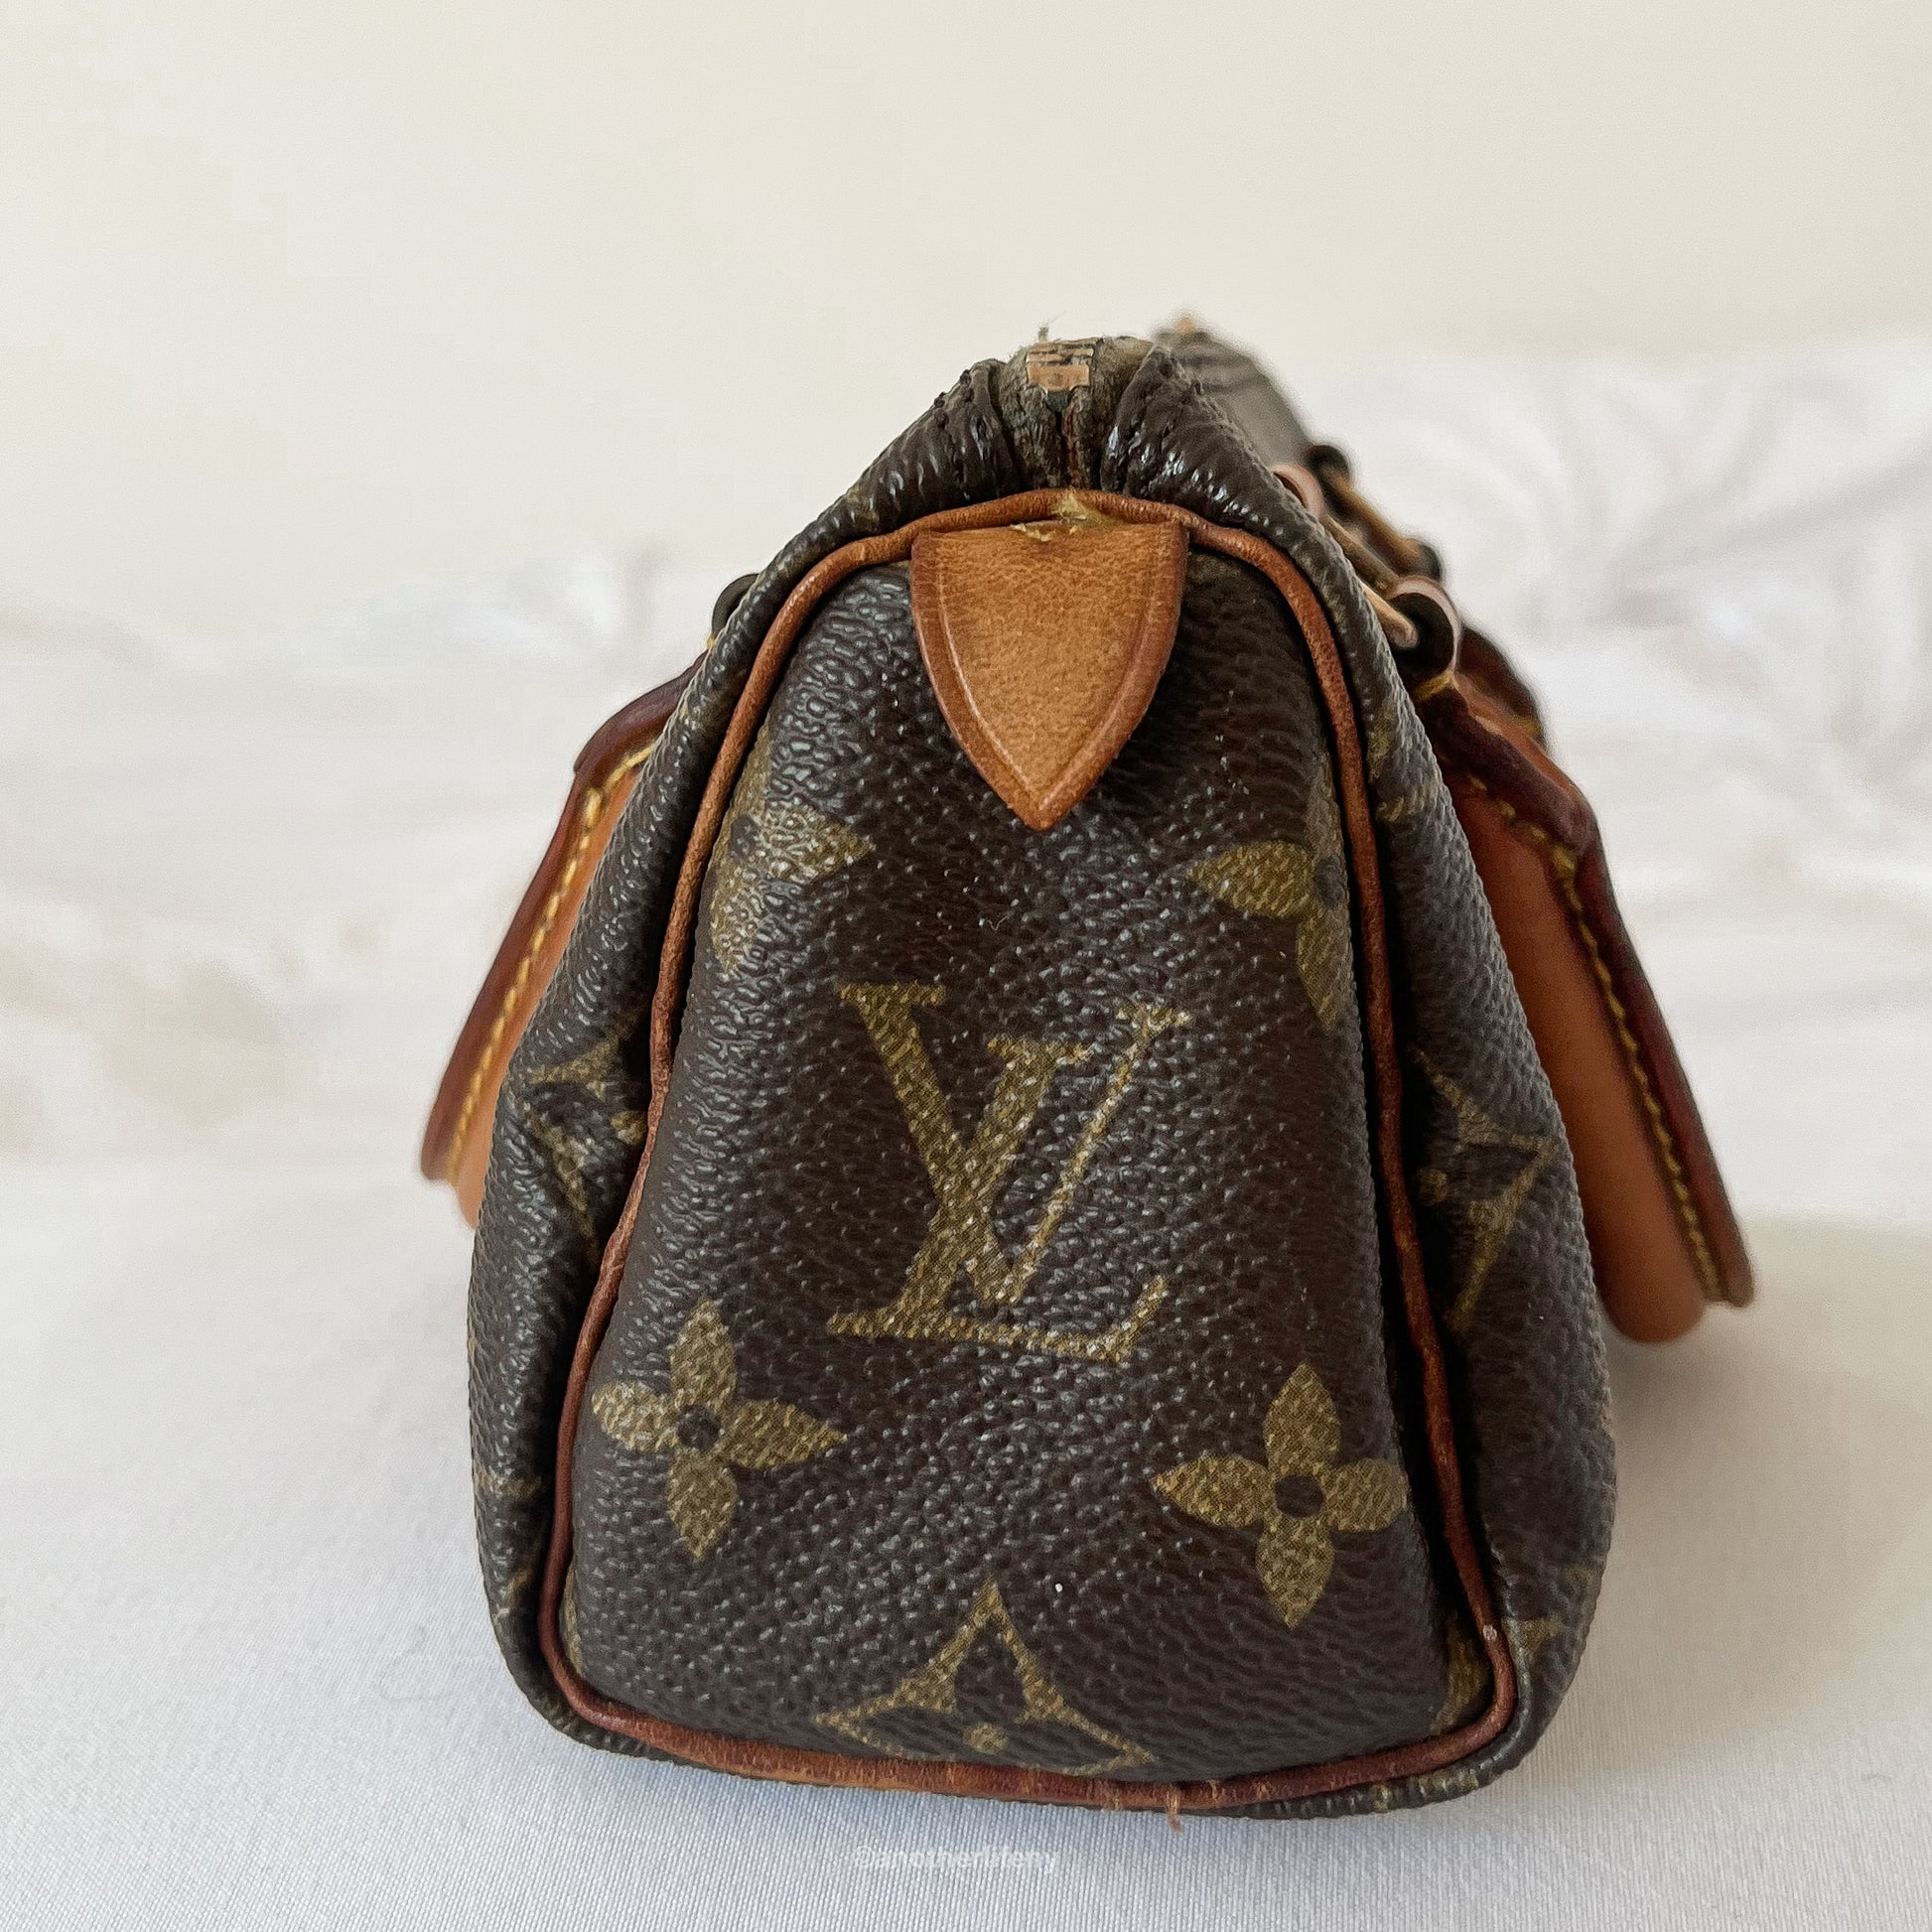 Louis Vuitton Mini Speedy Sac HL